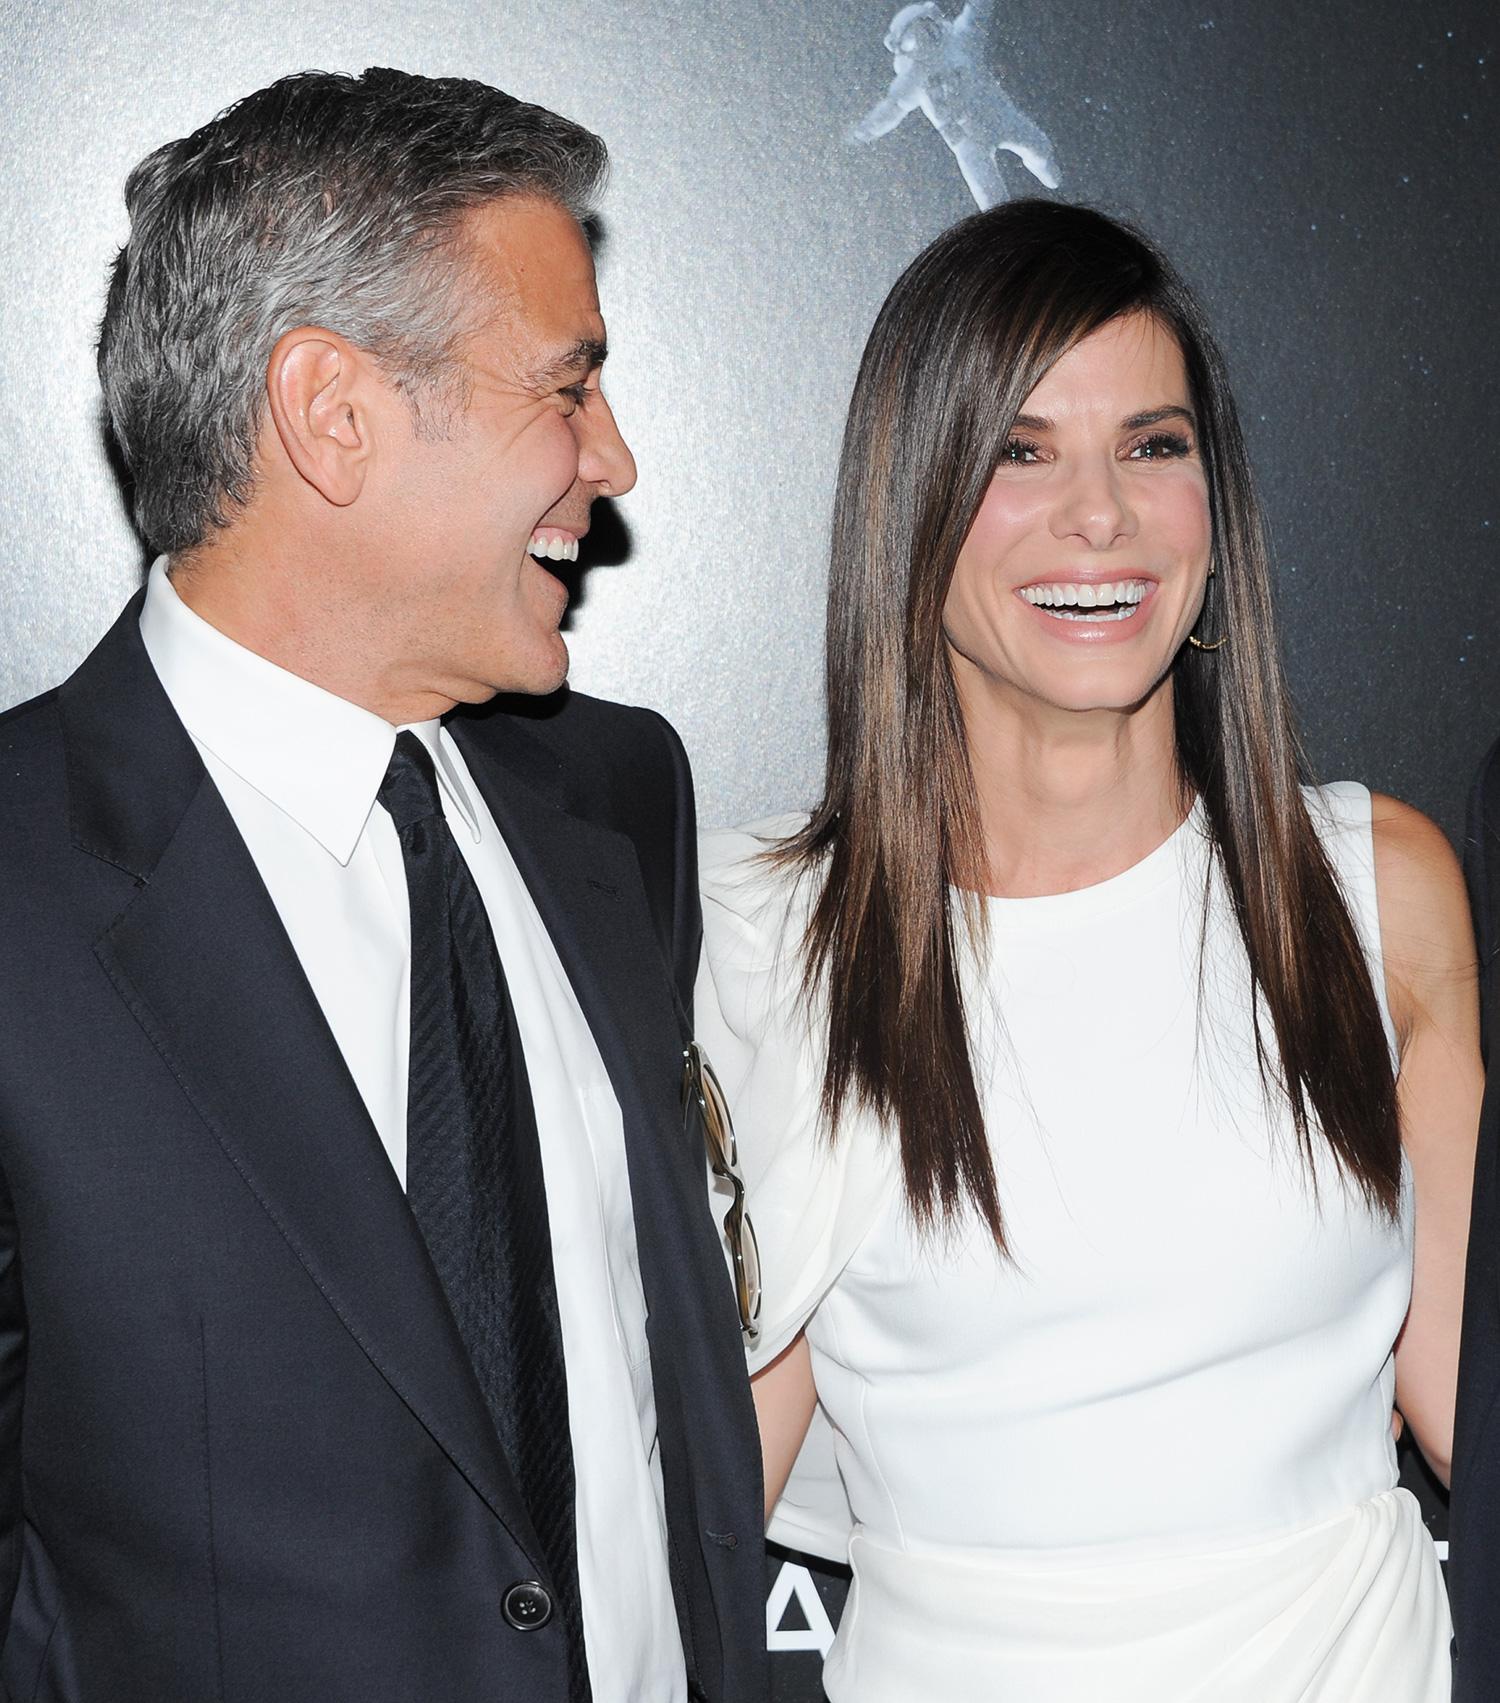 Gladare miner när George Clooney spelade mot Sandra Bullock i "Gravity”.